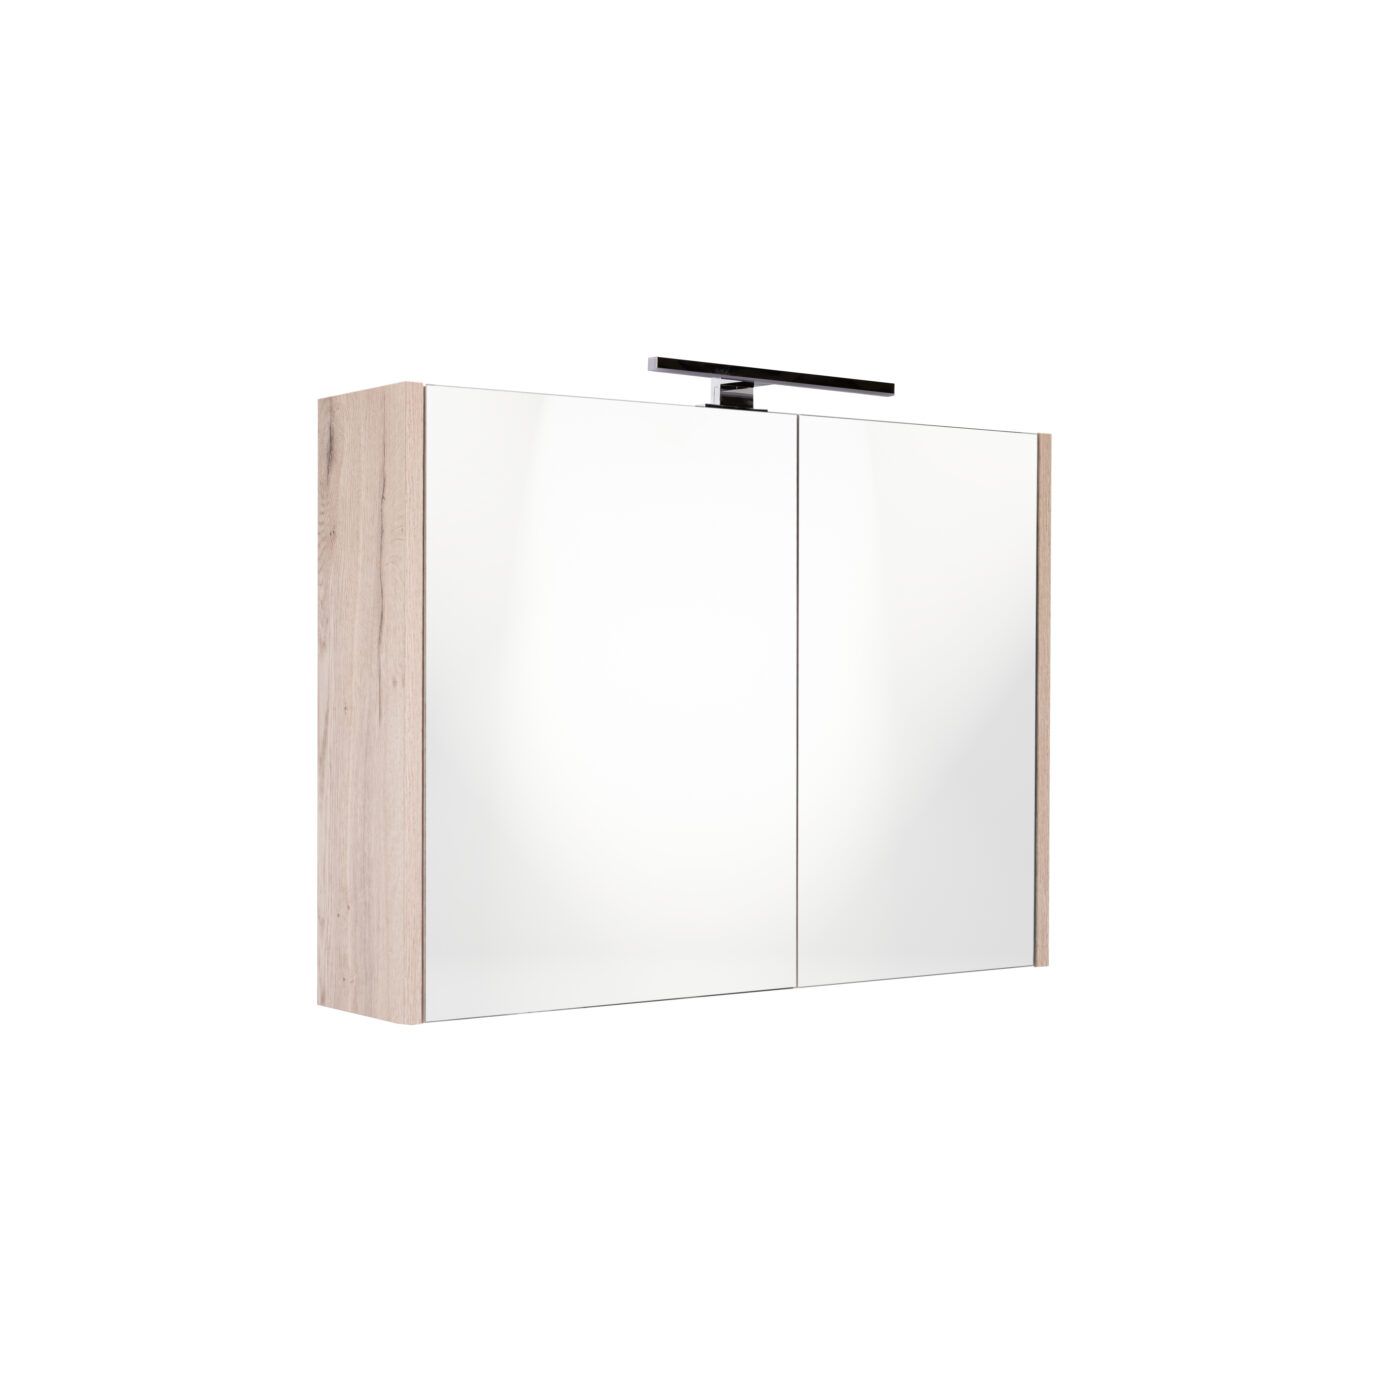 Best Design Happy Halifax spiegelkast met verlichting 80x60 halifax